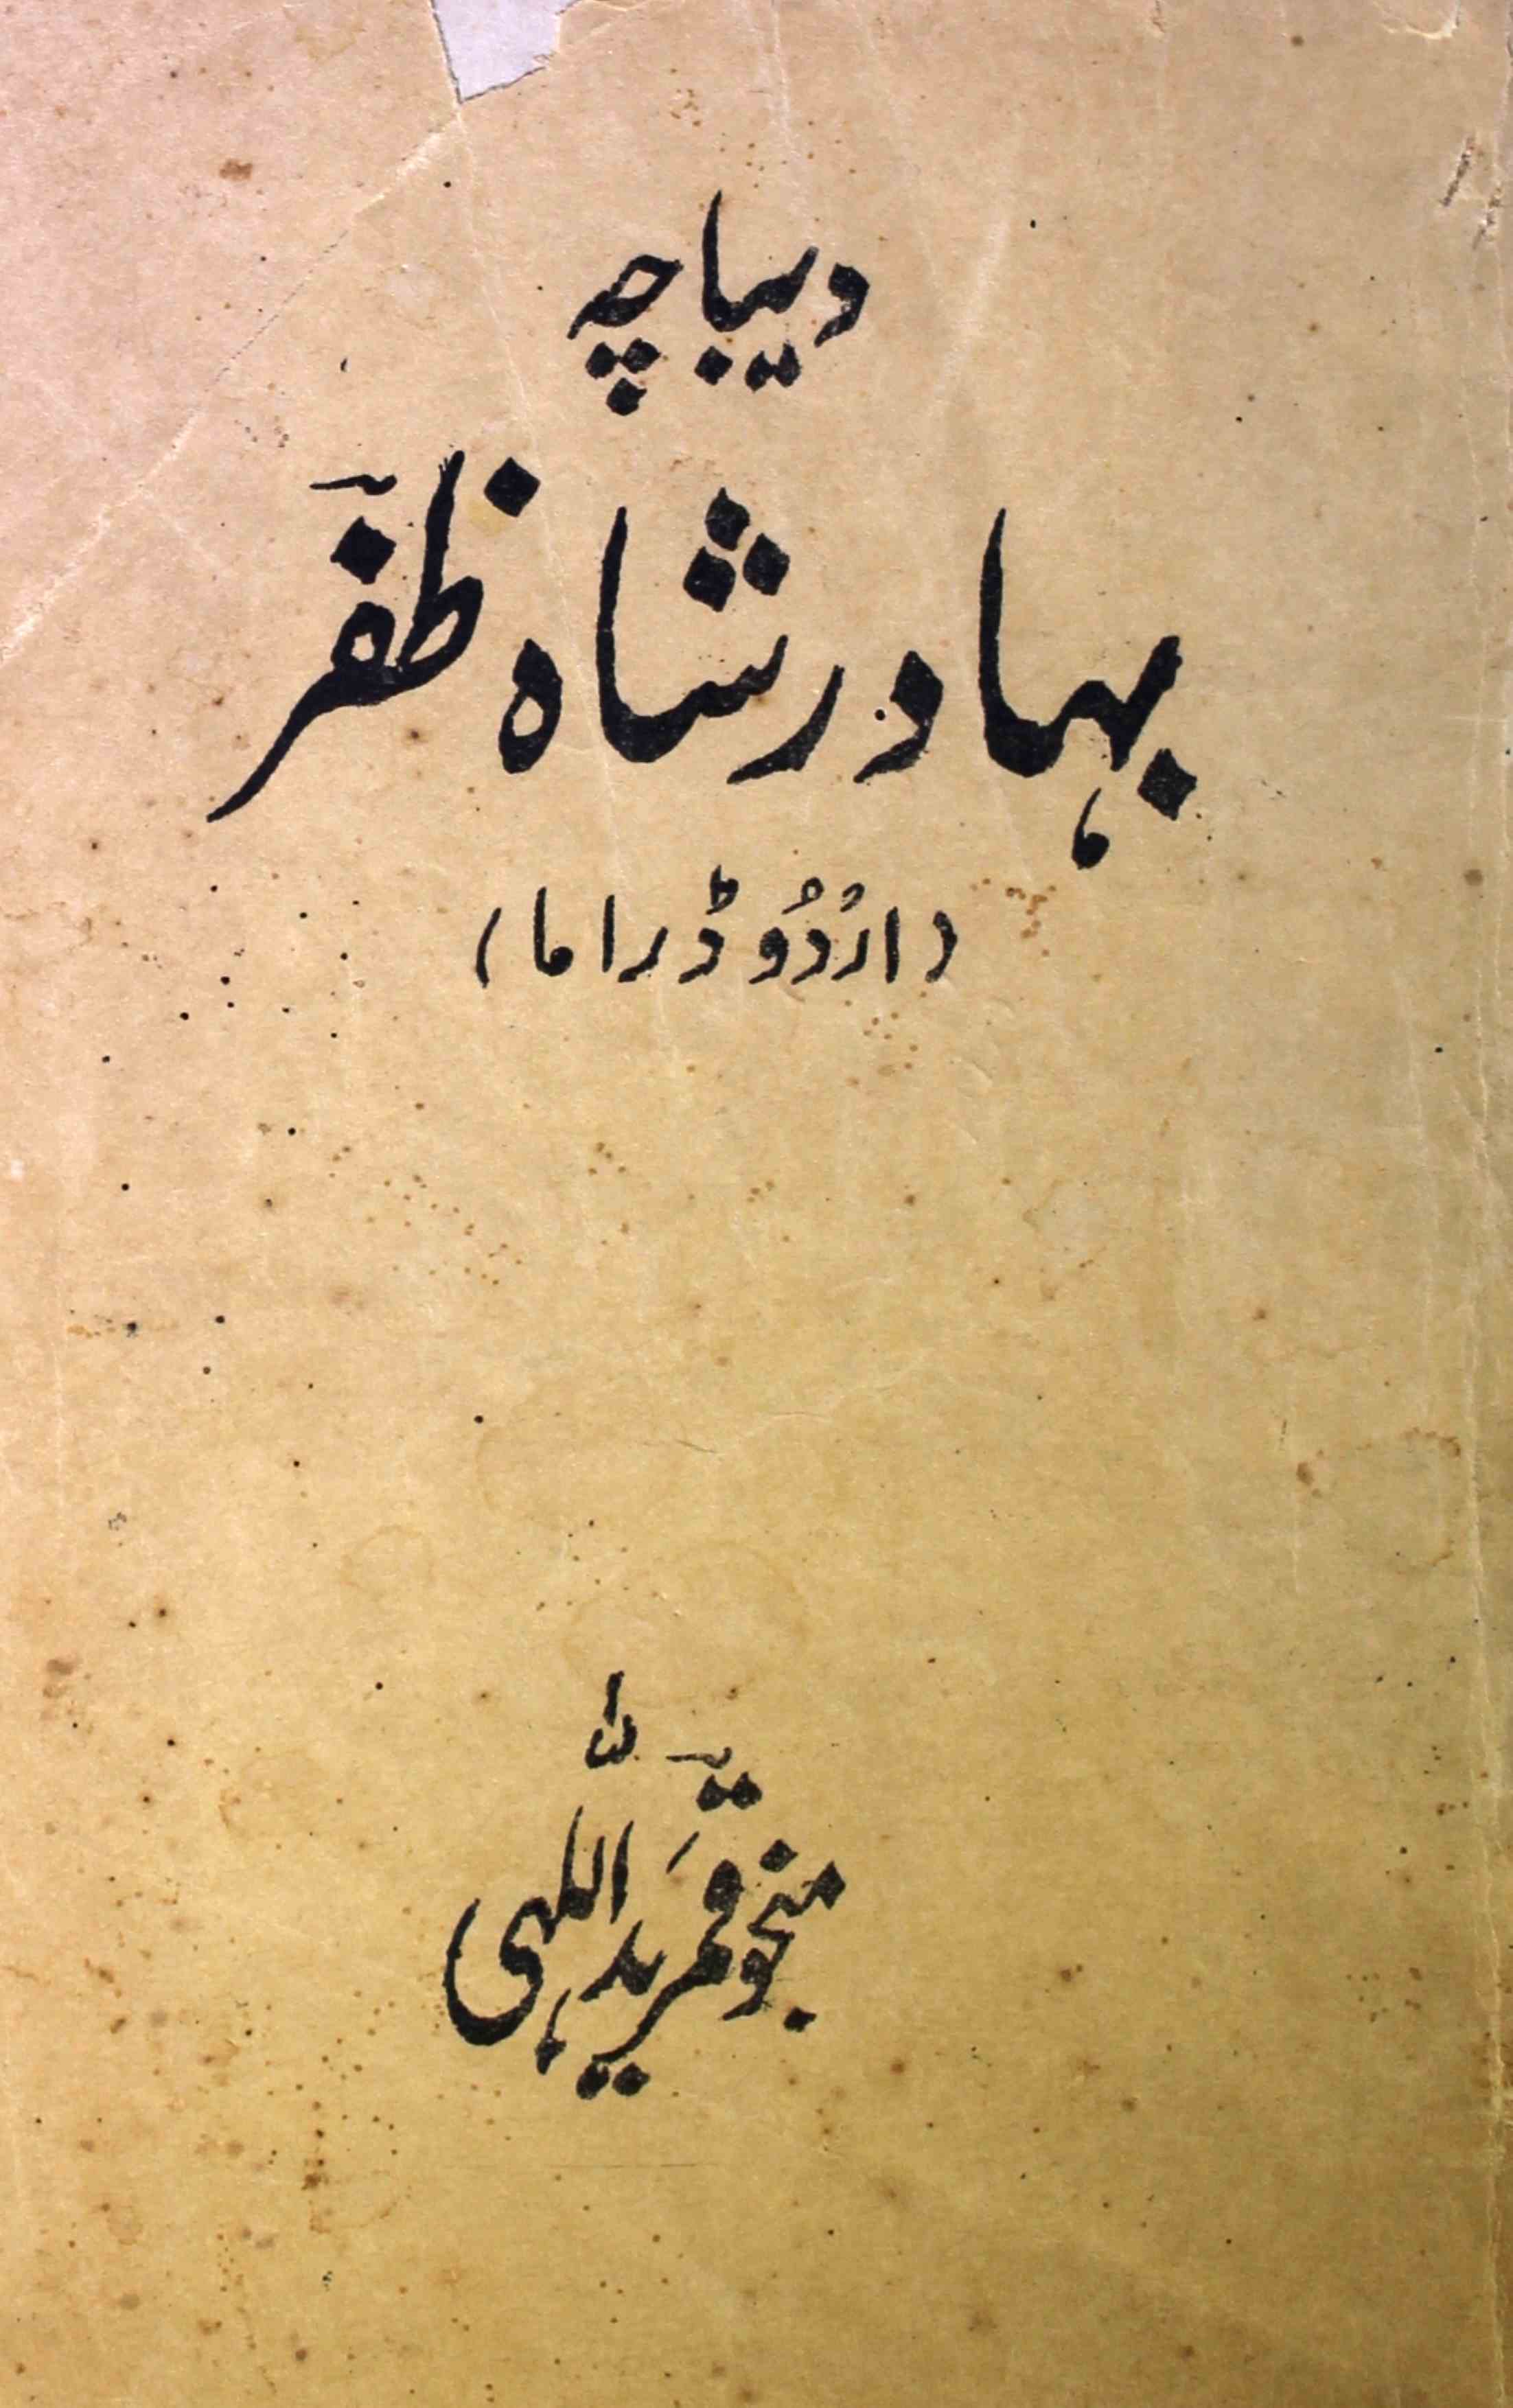 Deebacha Bahadur Shah Zafar